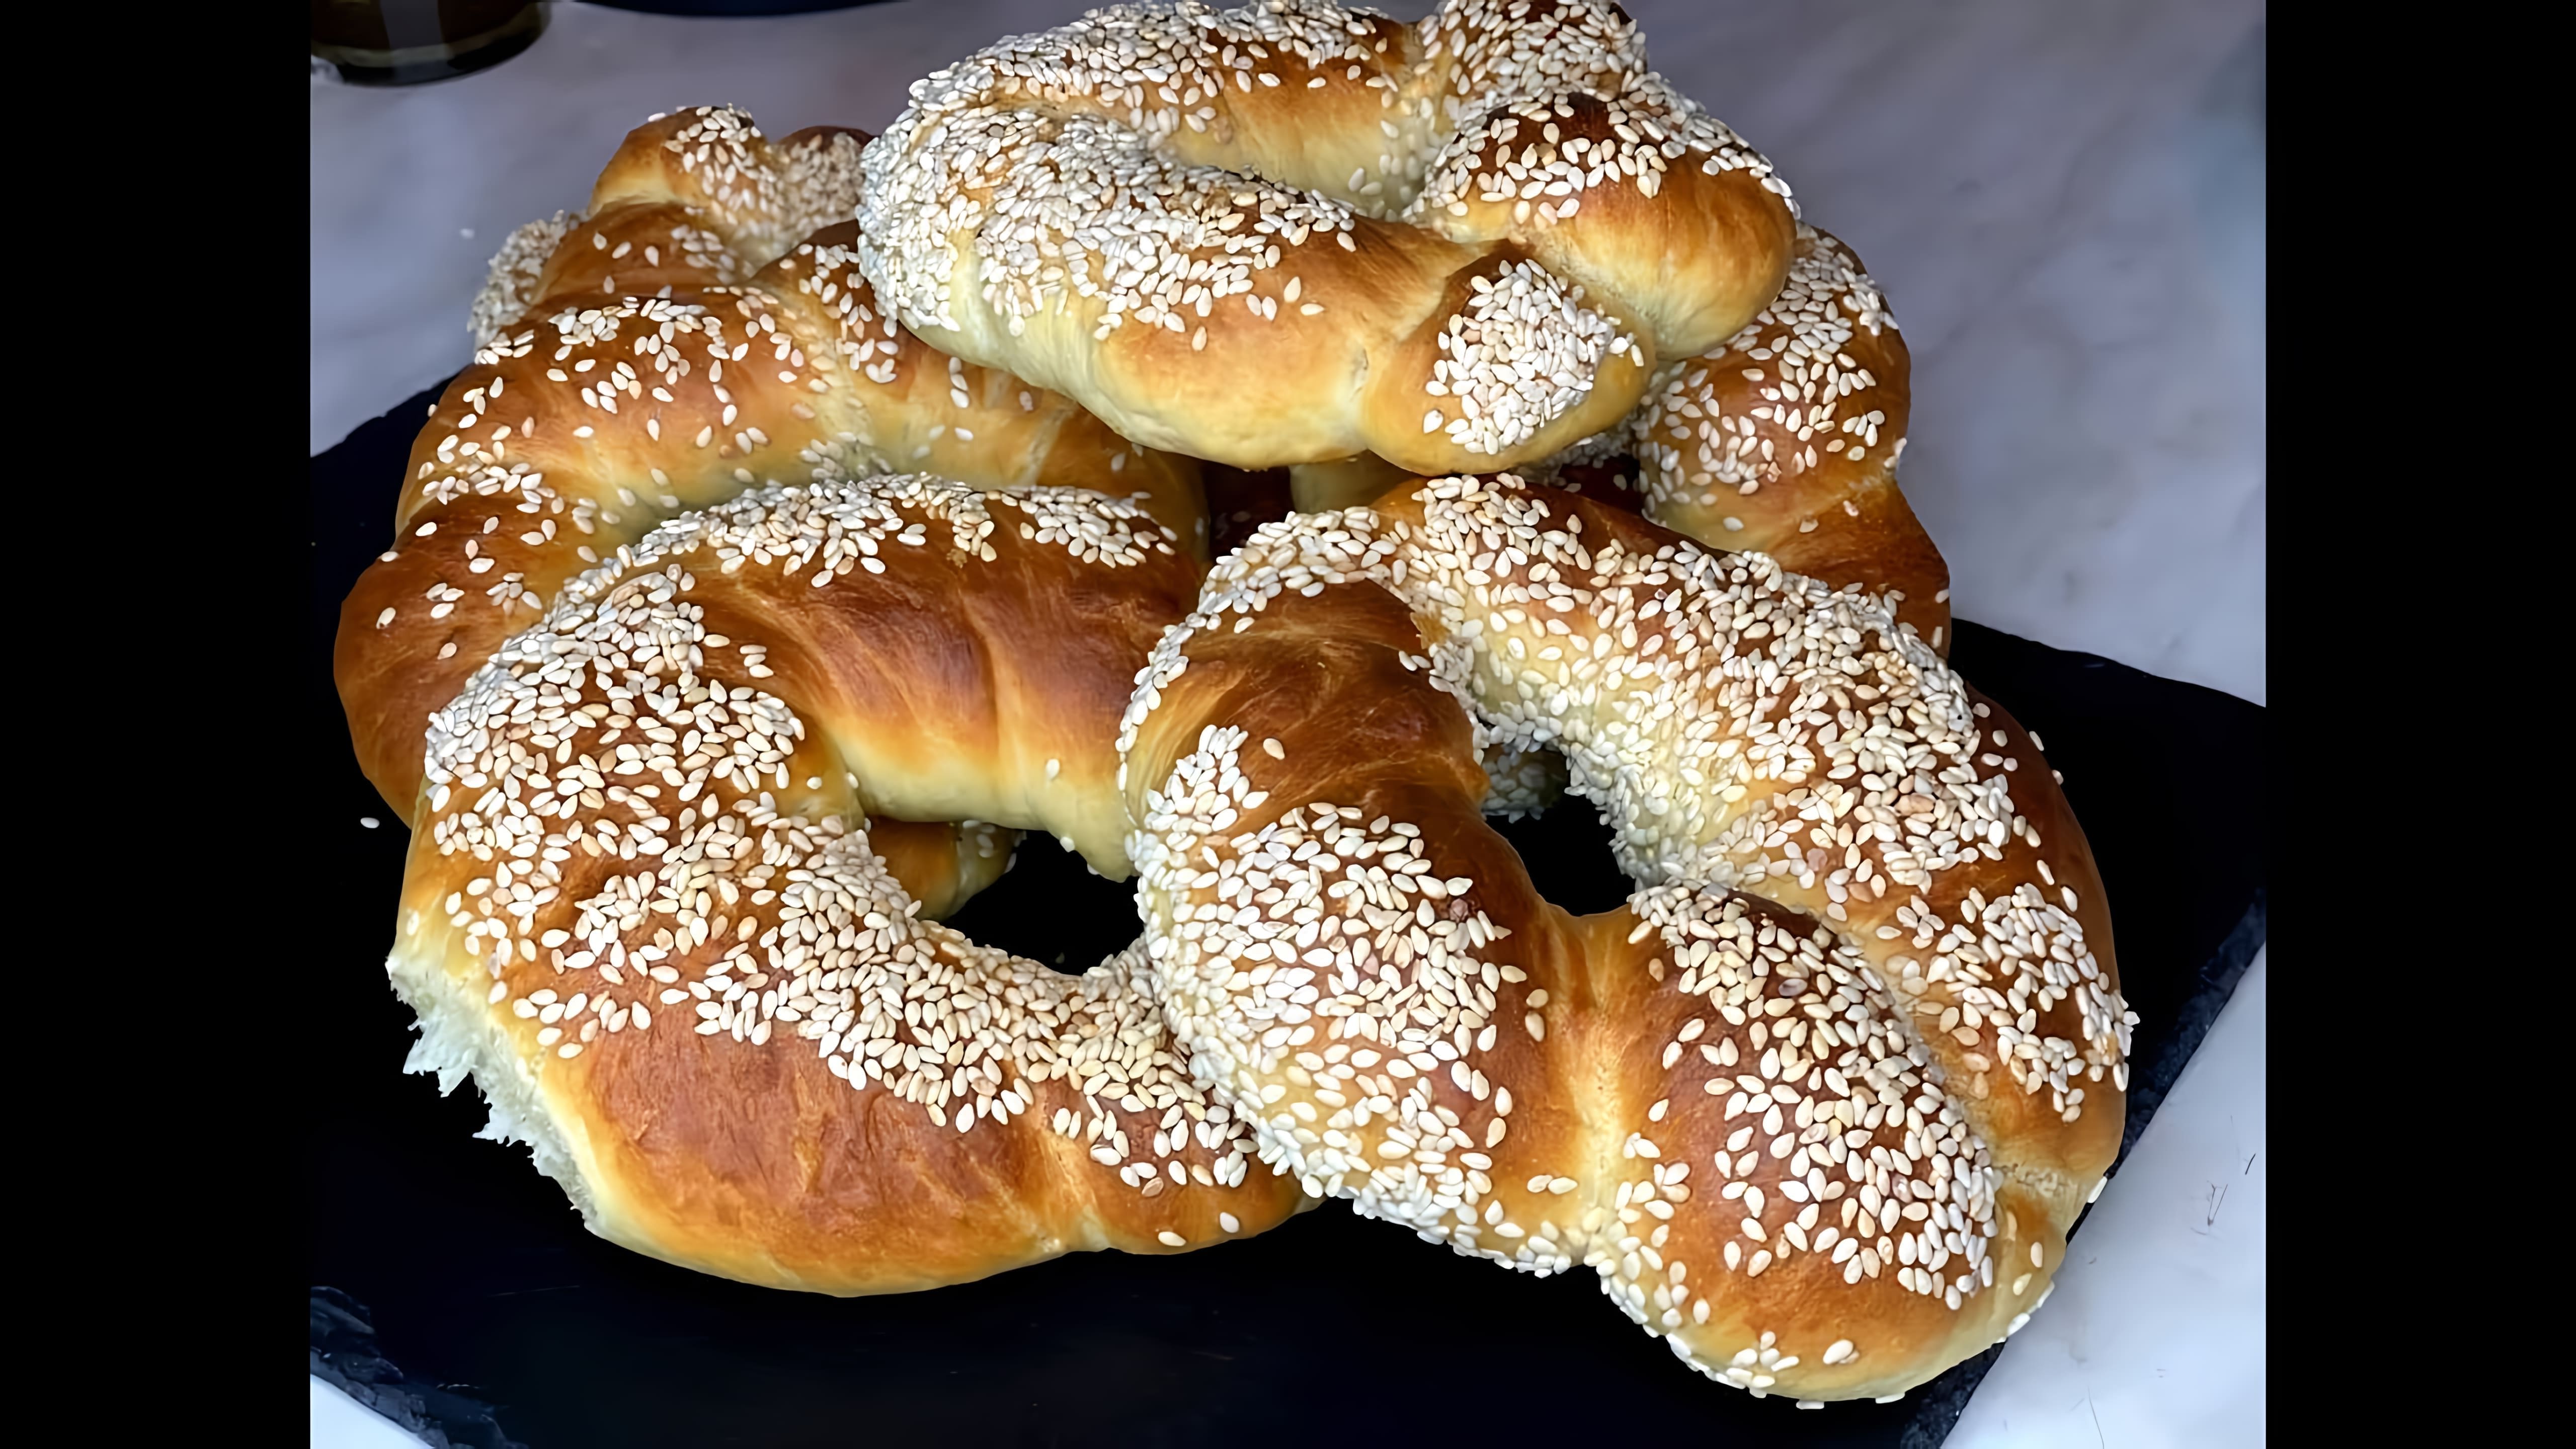 В этом видео демонстрируется процесс приготовления турецких булочек "Симиты" с кунжутом